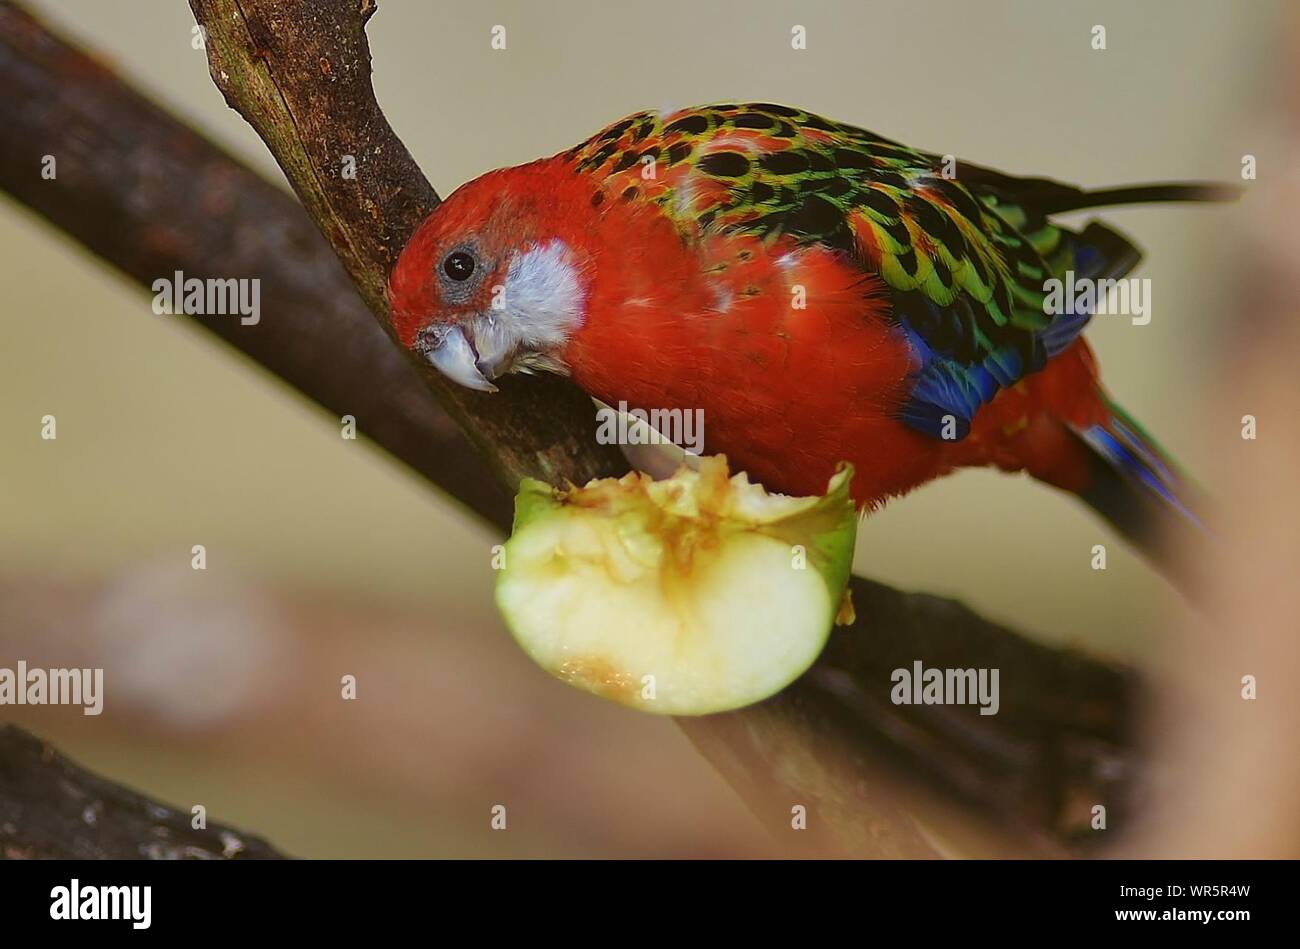 Close-up of Red Nourrir les oiseaux sur Apple Banque D'Images